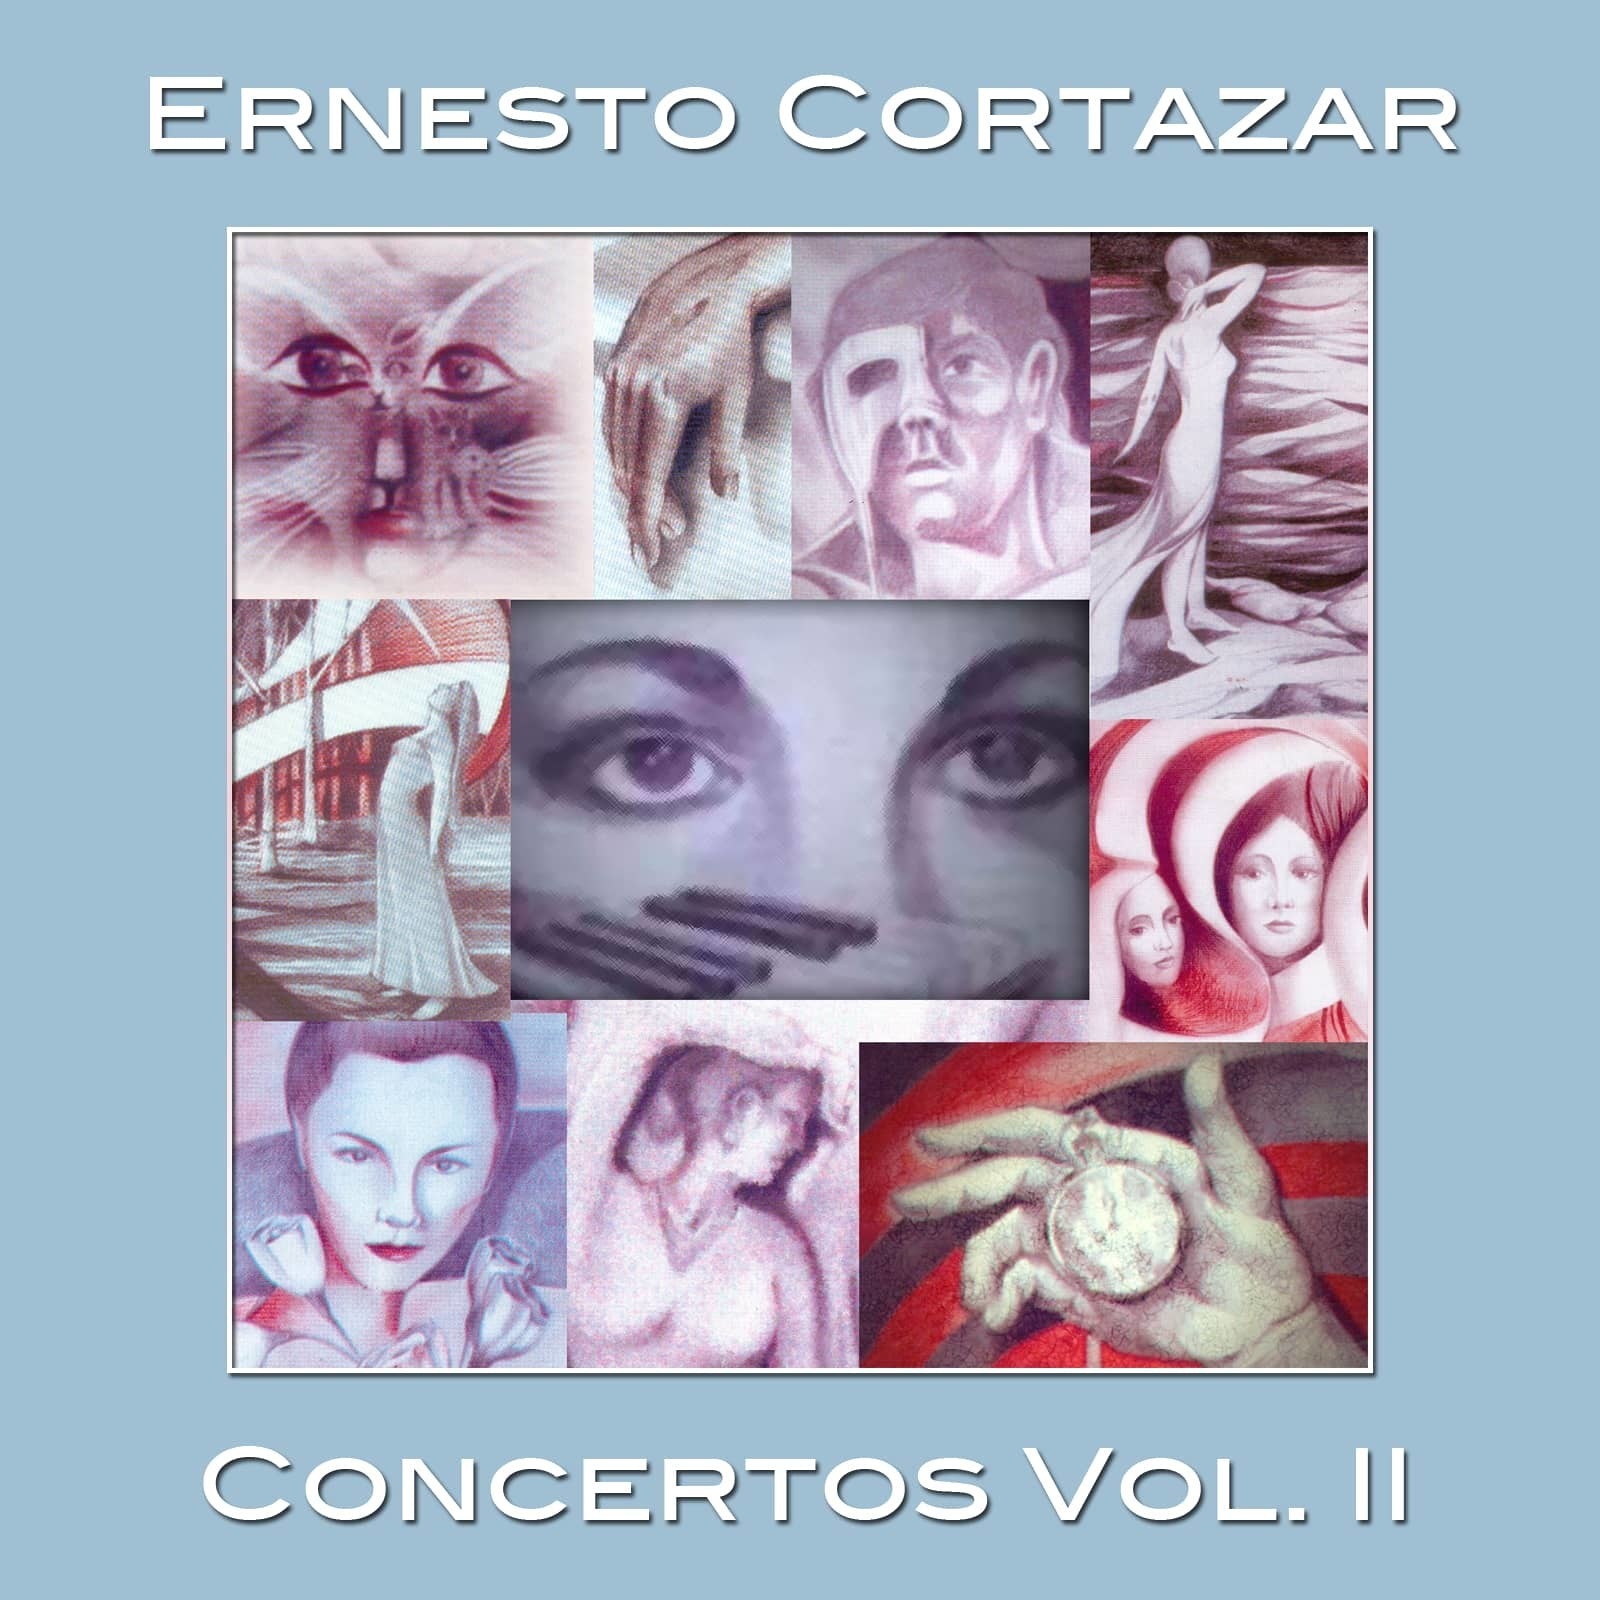 Concertos Vol. II MP3 Album Composed by Ernesto Cortazar